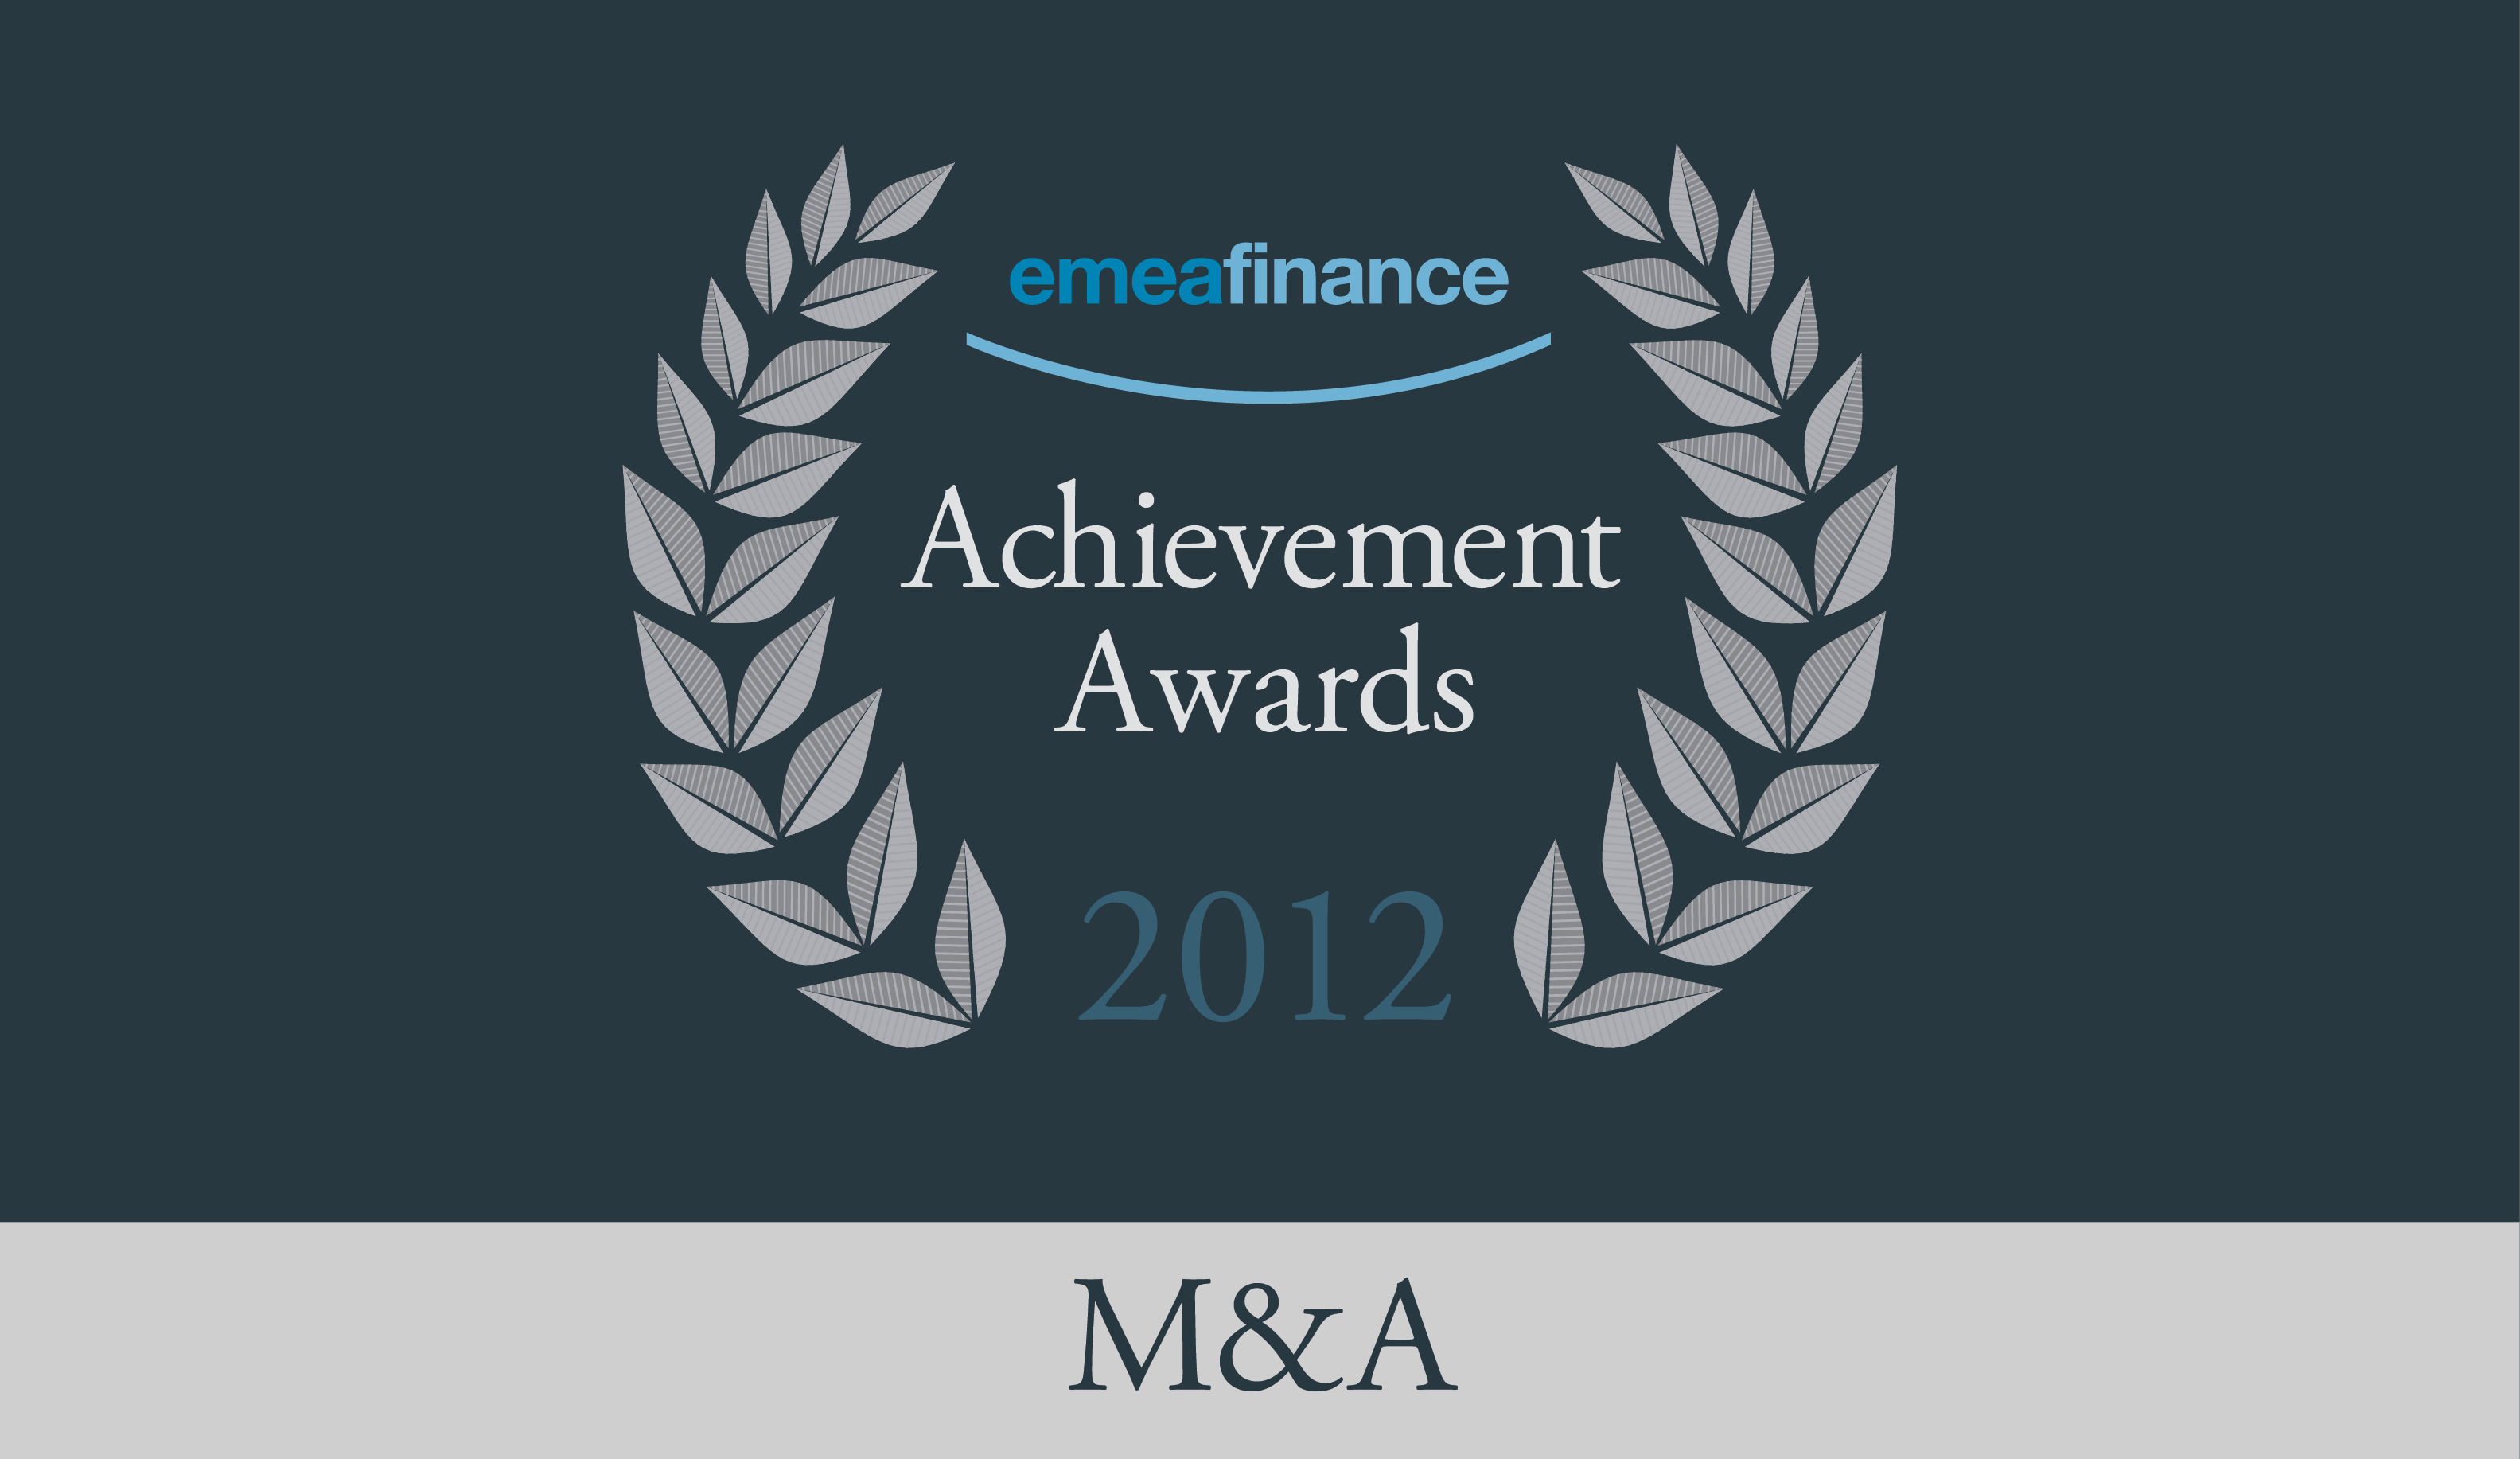 Achievement Awards 2012: M&A